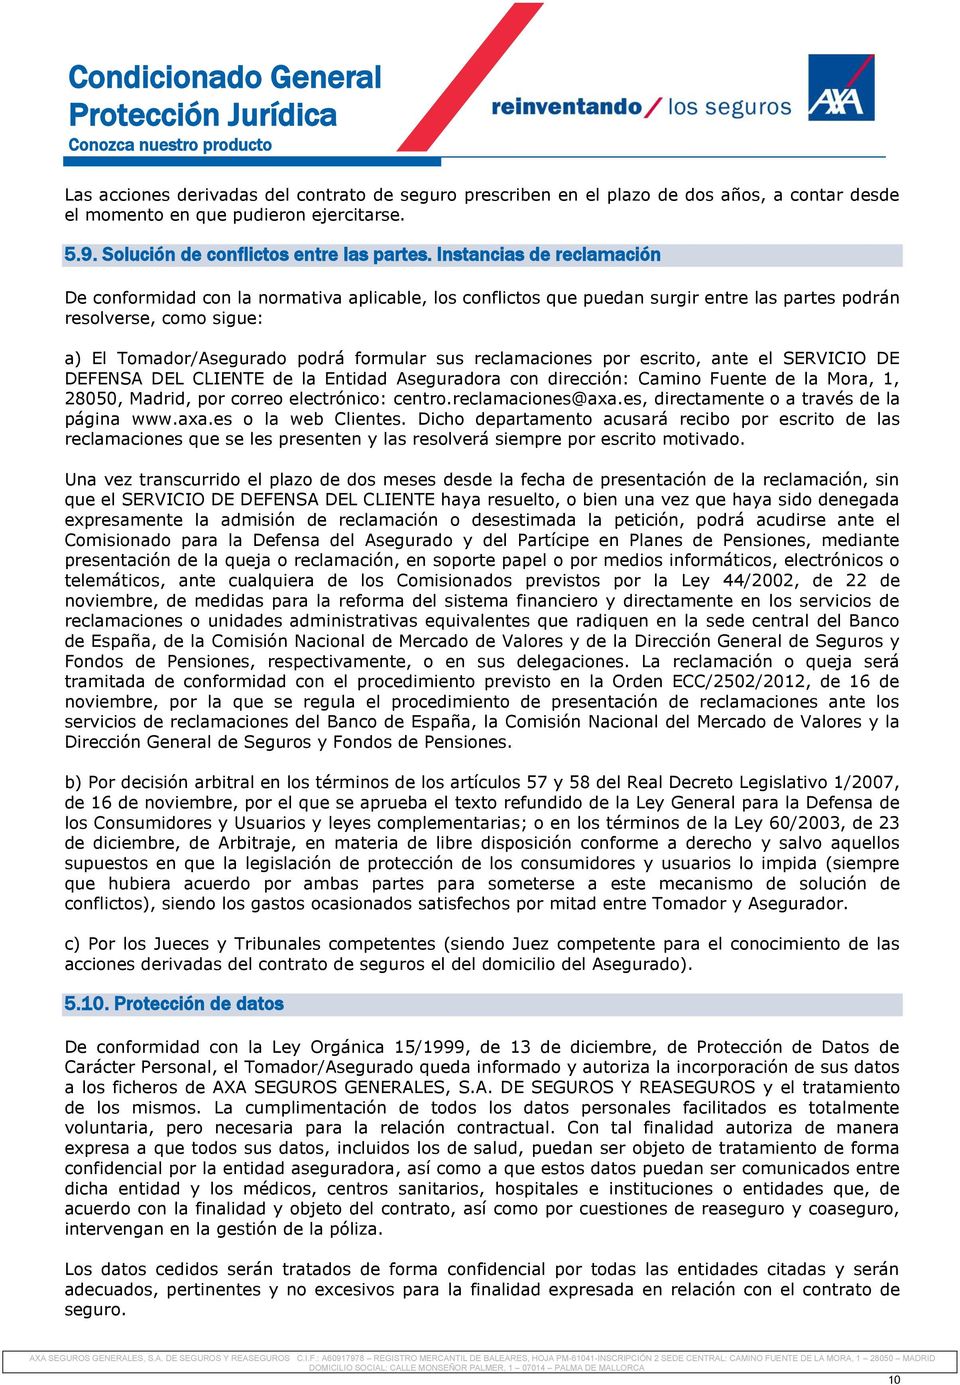 reclamaciones por escrito, ante el SERVICIO DE DEFENSA DEL CLIENTE de la Entidad Aseguradora con dirección: Camino Fuente de la Mora, 1, 28050, Madrid, por correo electrónico: centro.